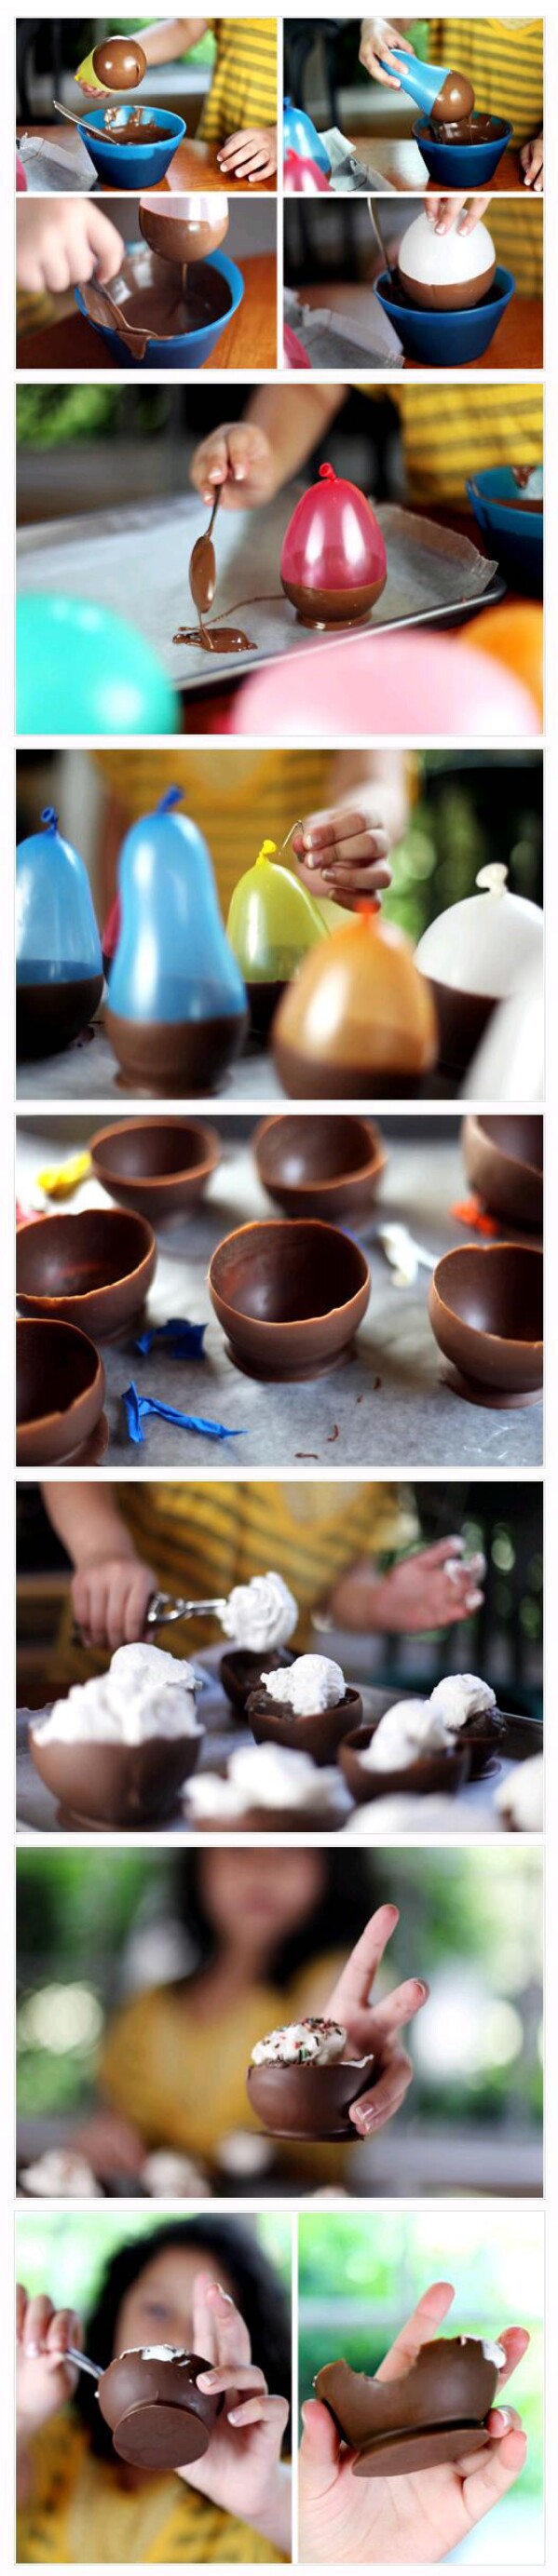 How to Make a Chocalate Bowl